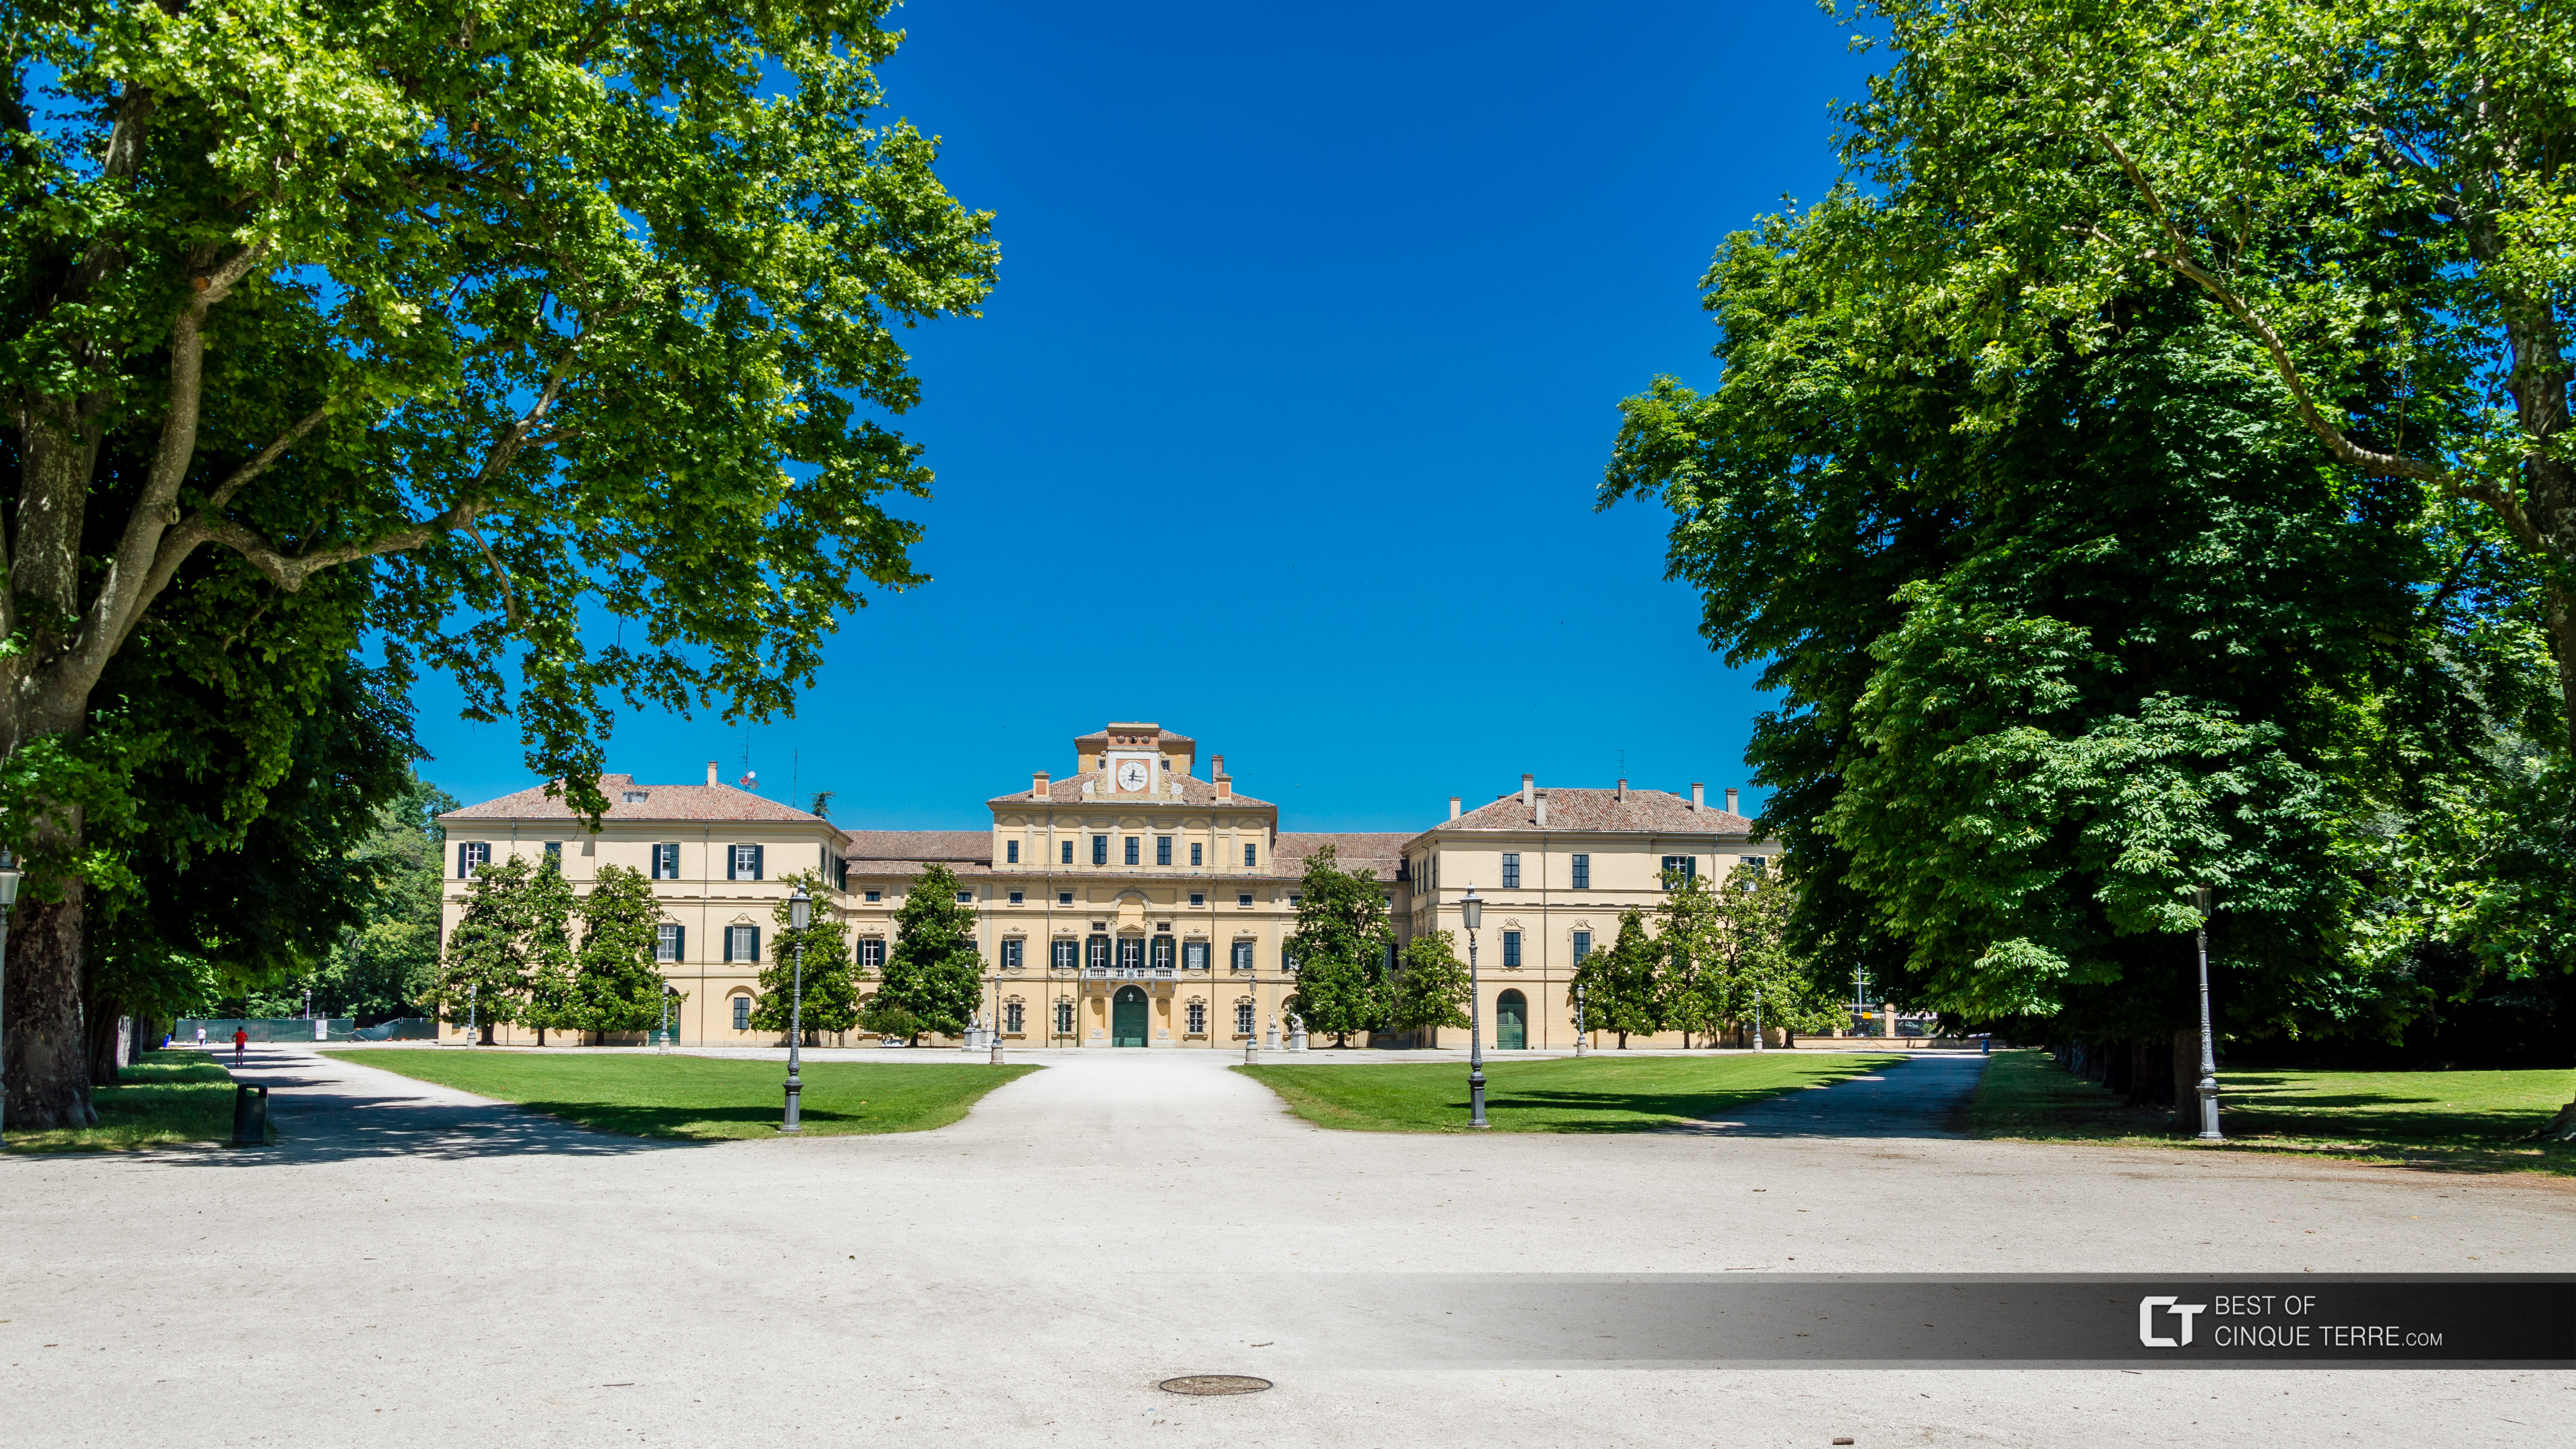 Pałac Ducale w parku Ducale, Parma, Włochy